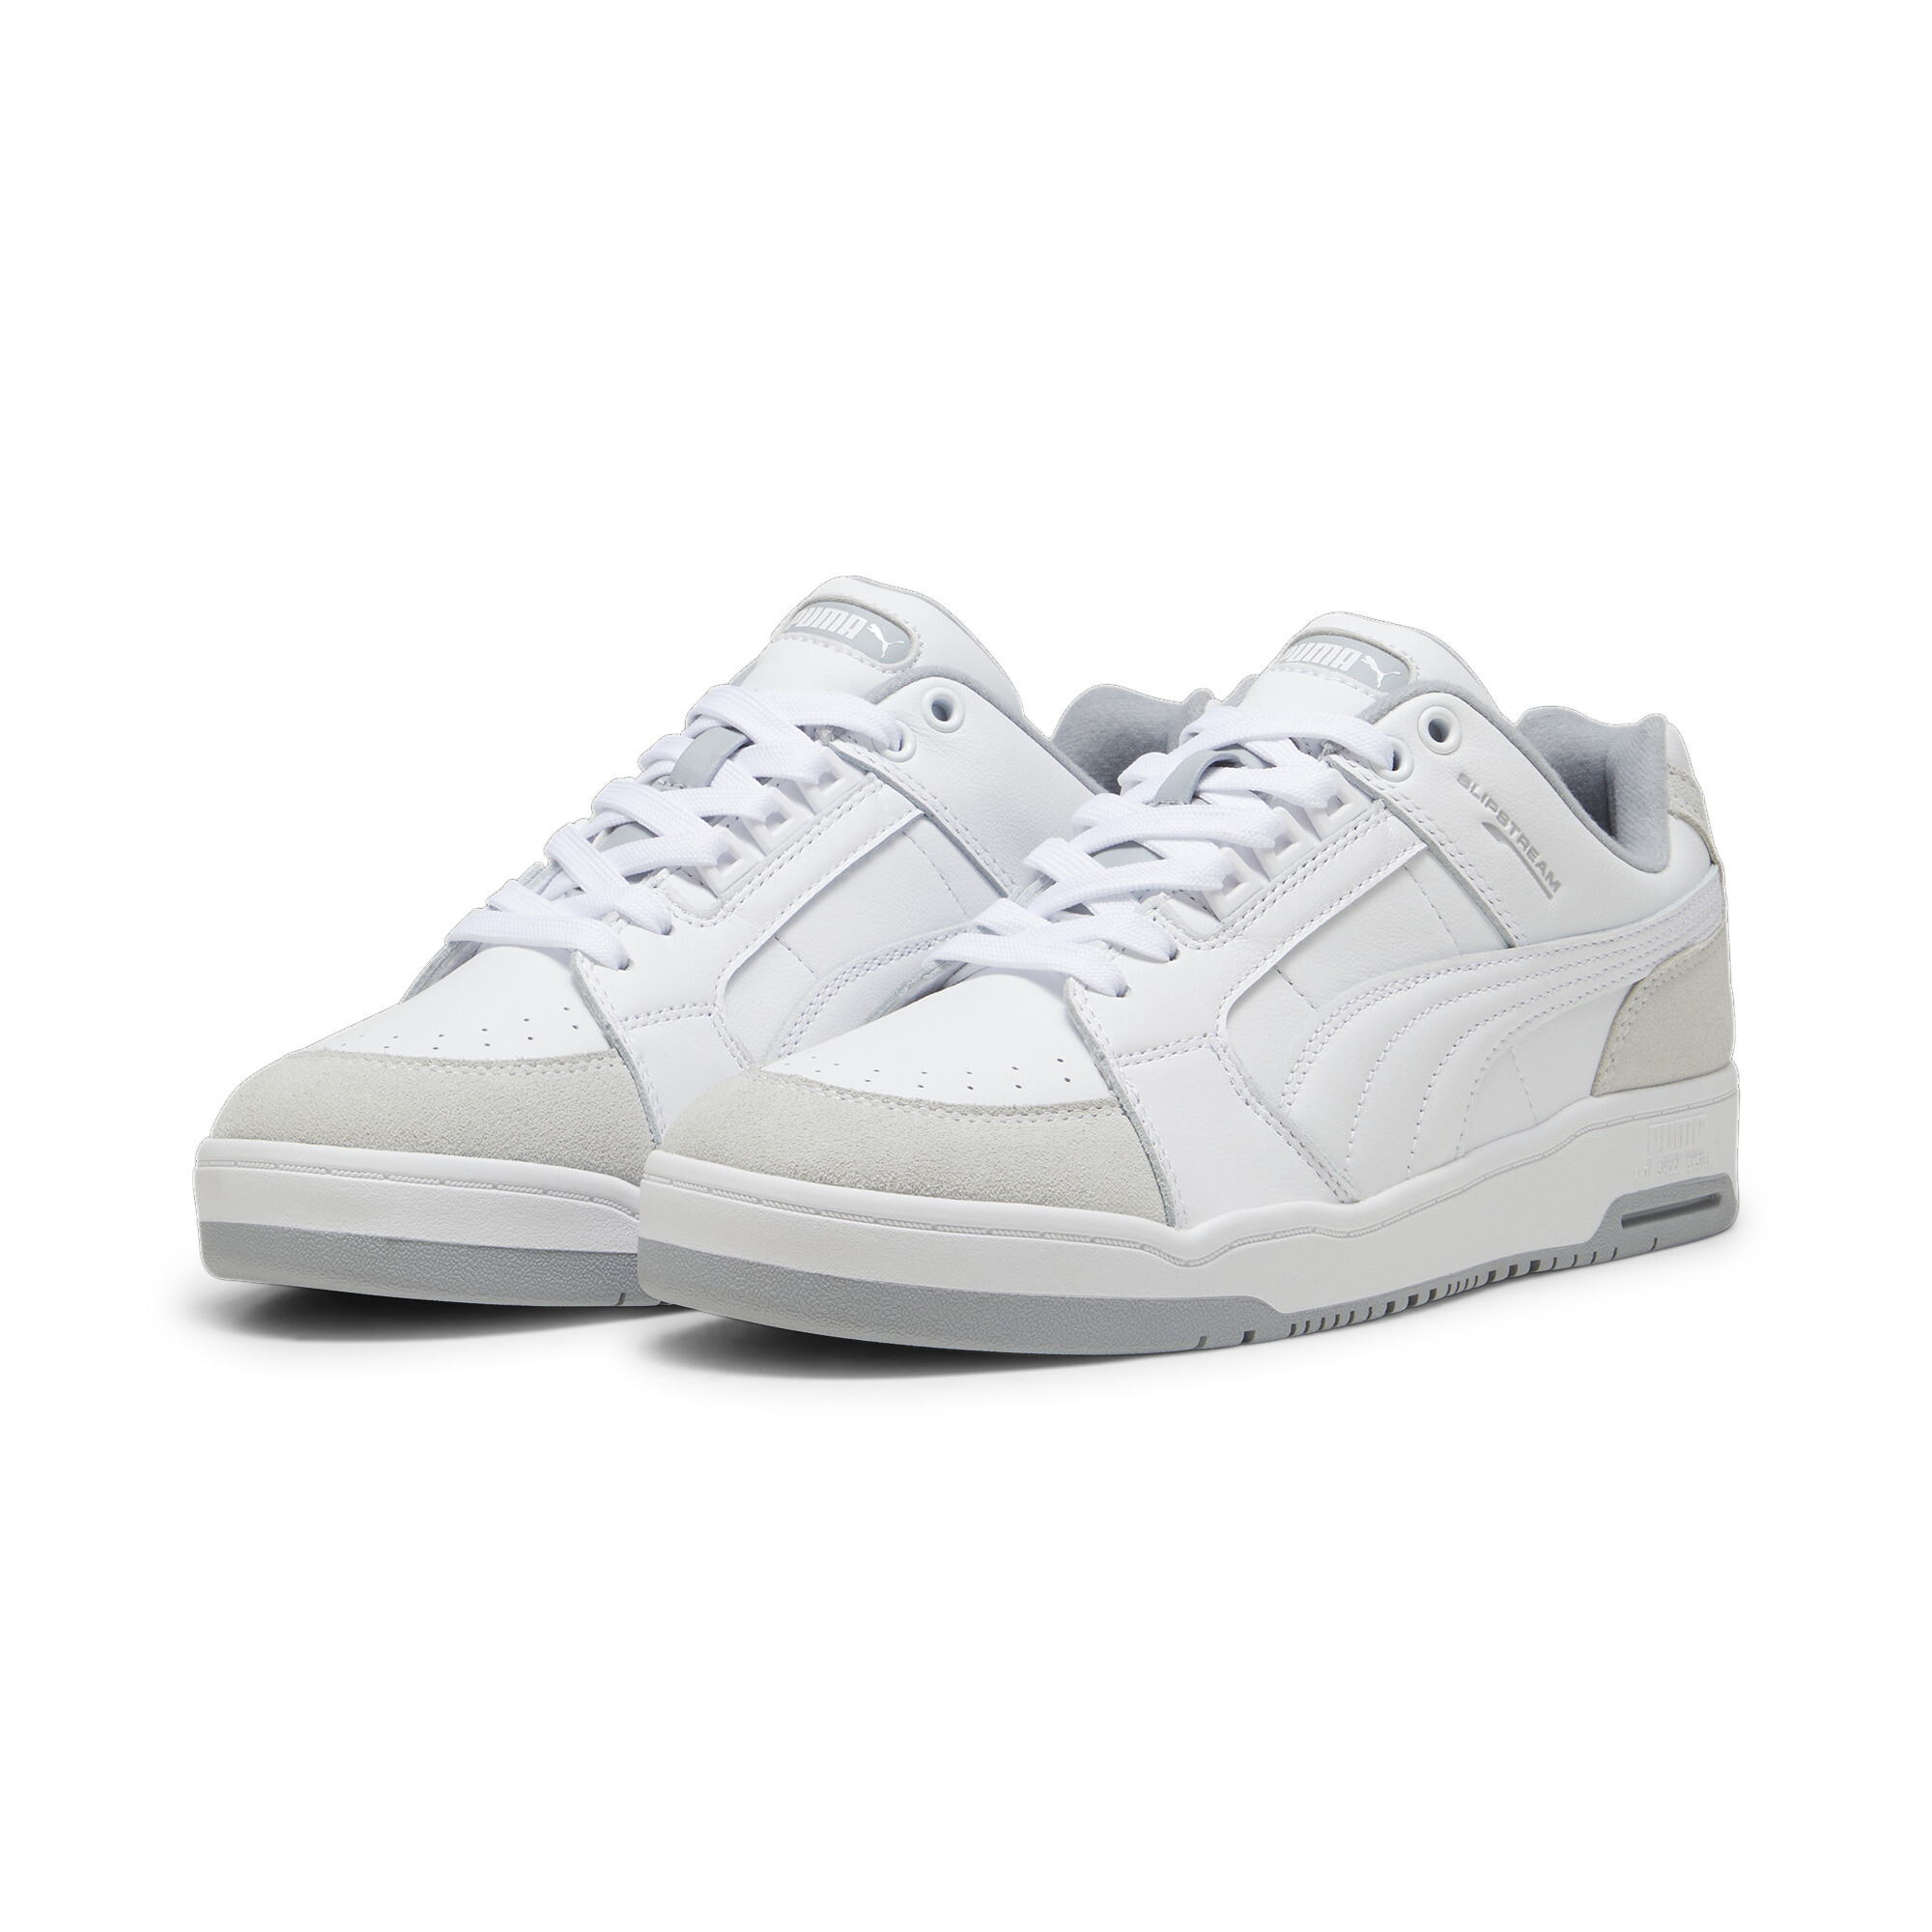 Puma Slipstream Lo Retro Trainers, White, Size 38.5, Shoes